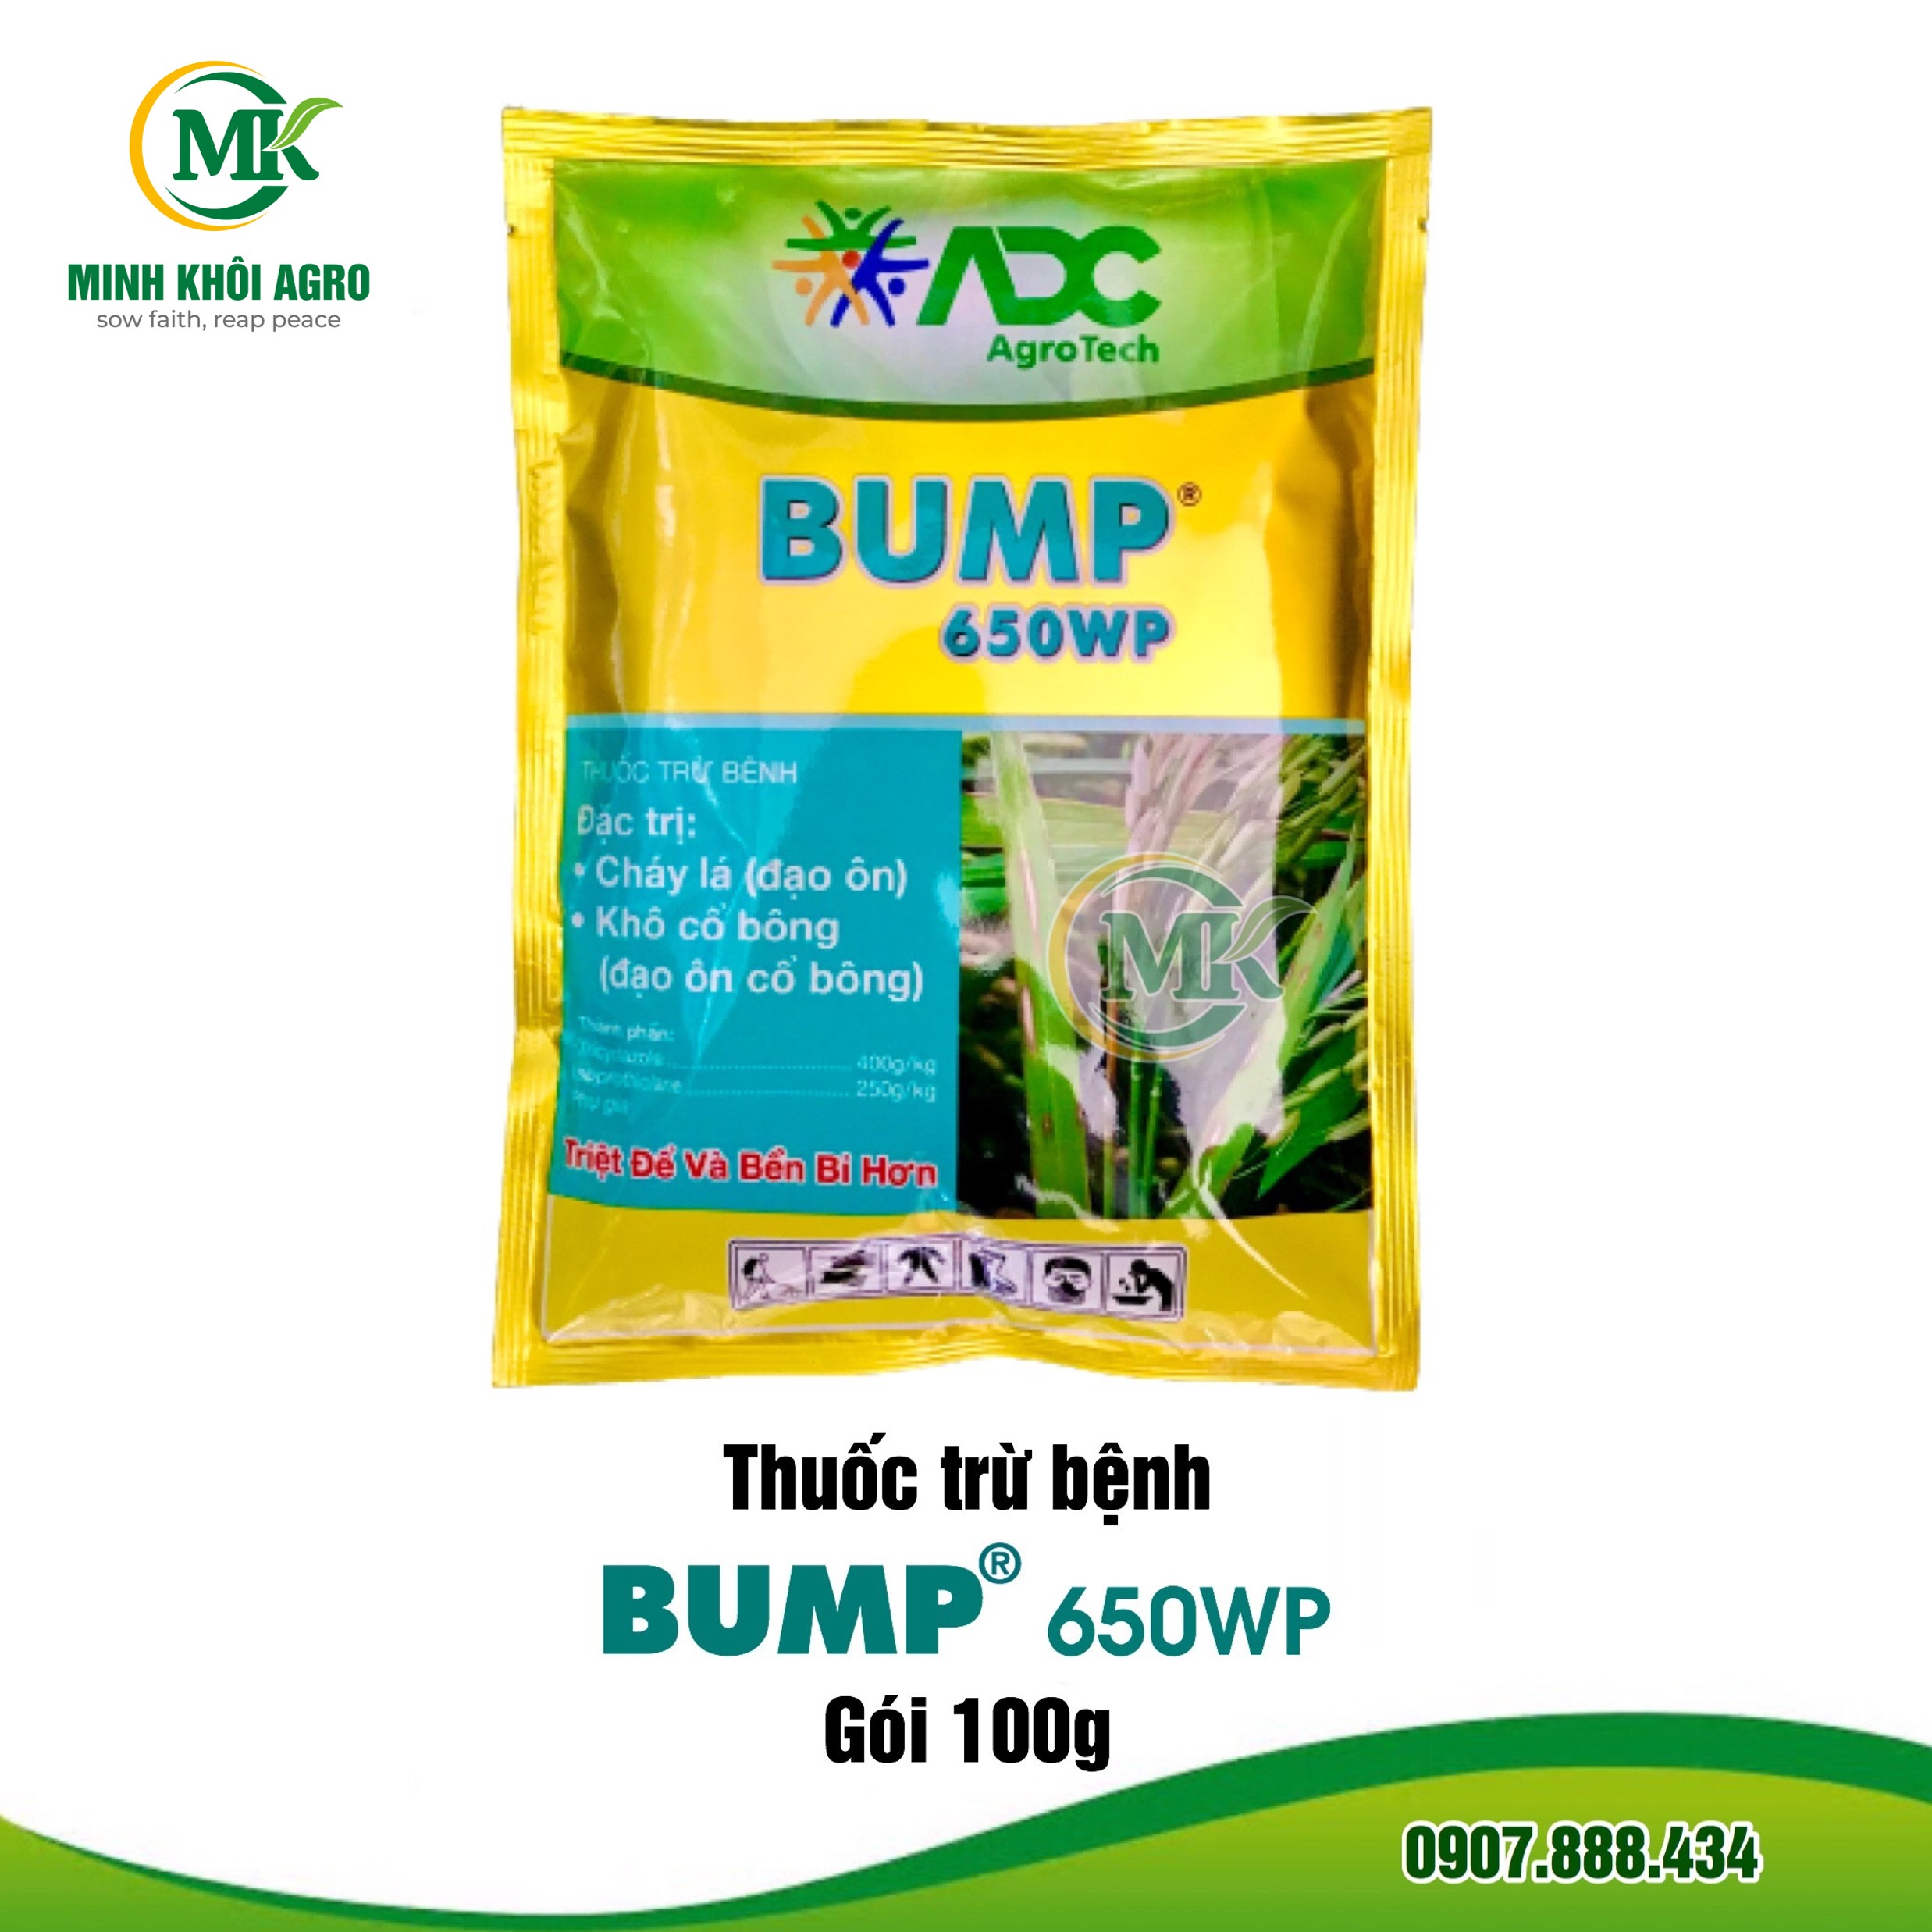 Thuốc trừ bệnh Bump 650WP - Gói 100g